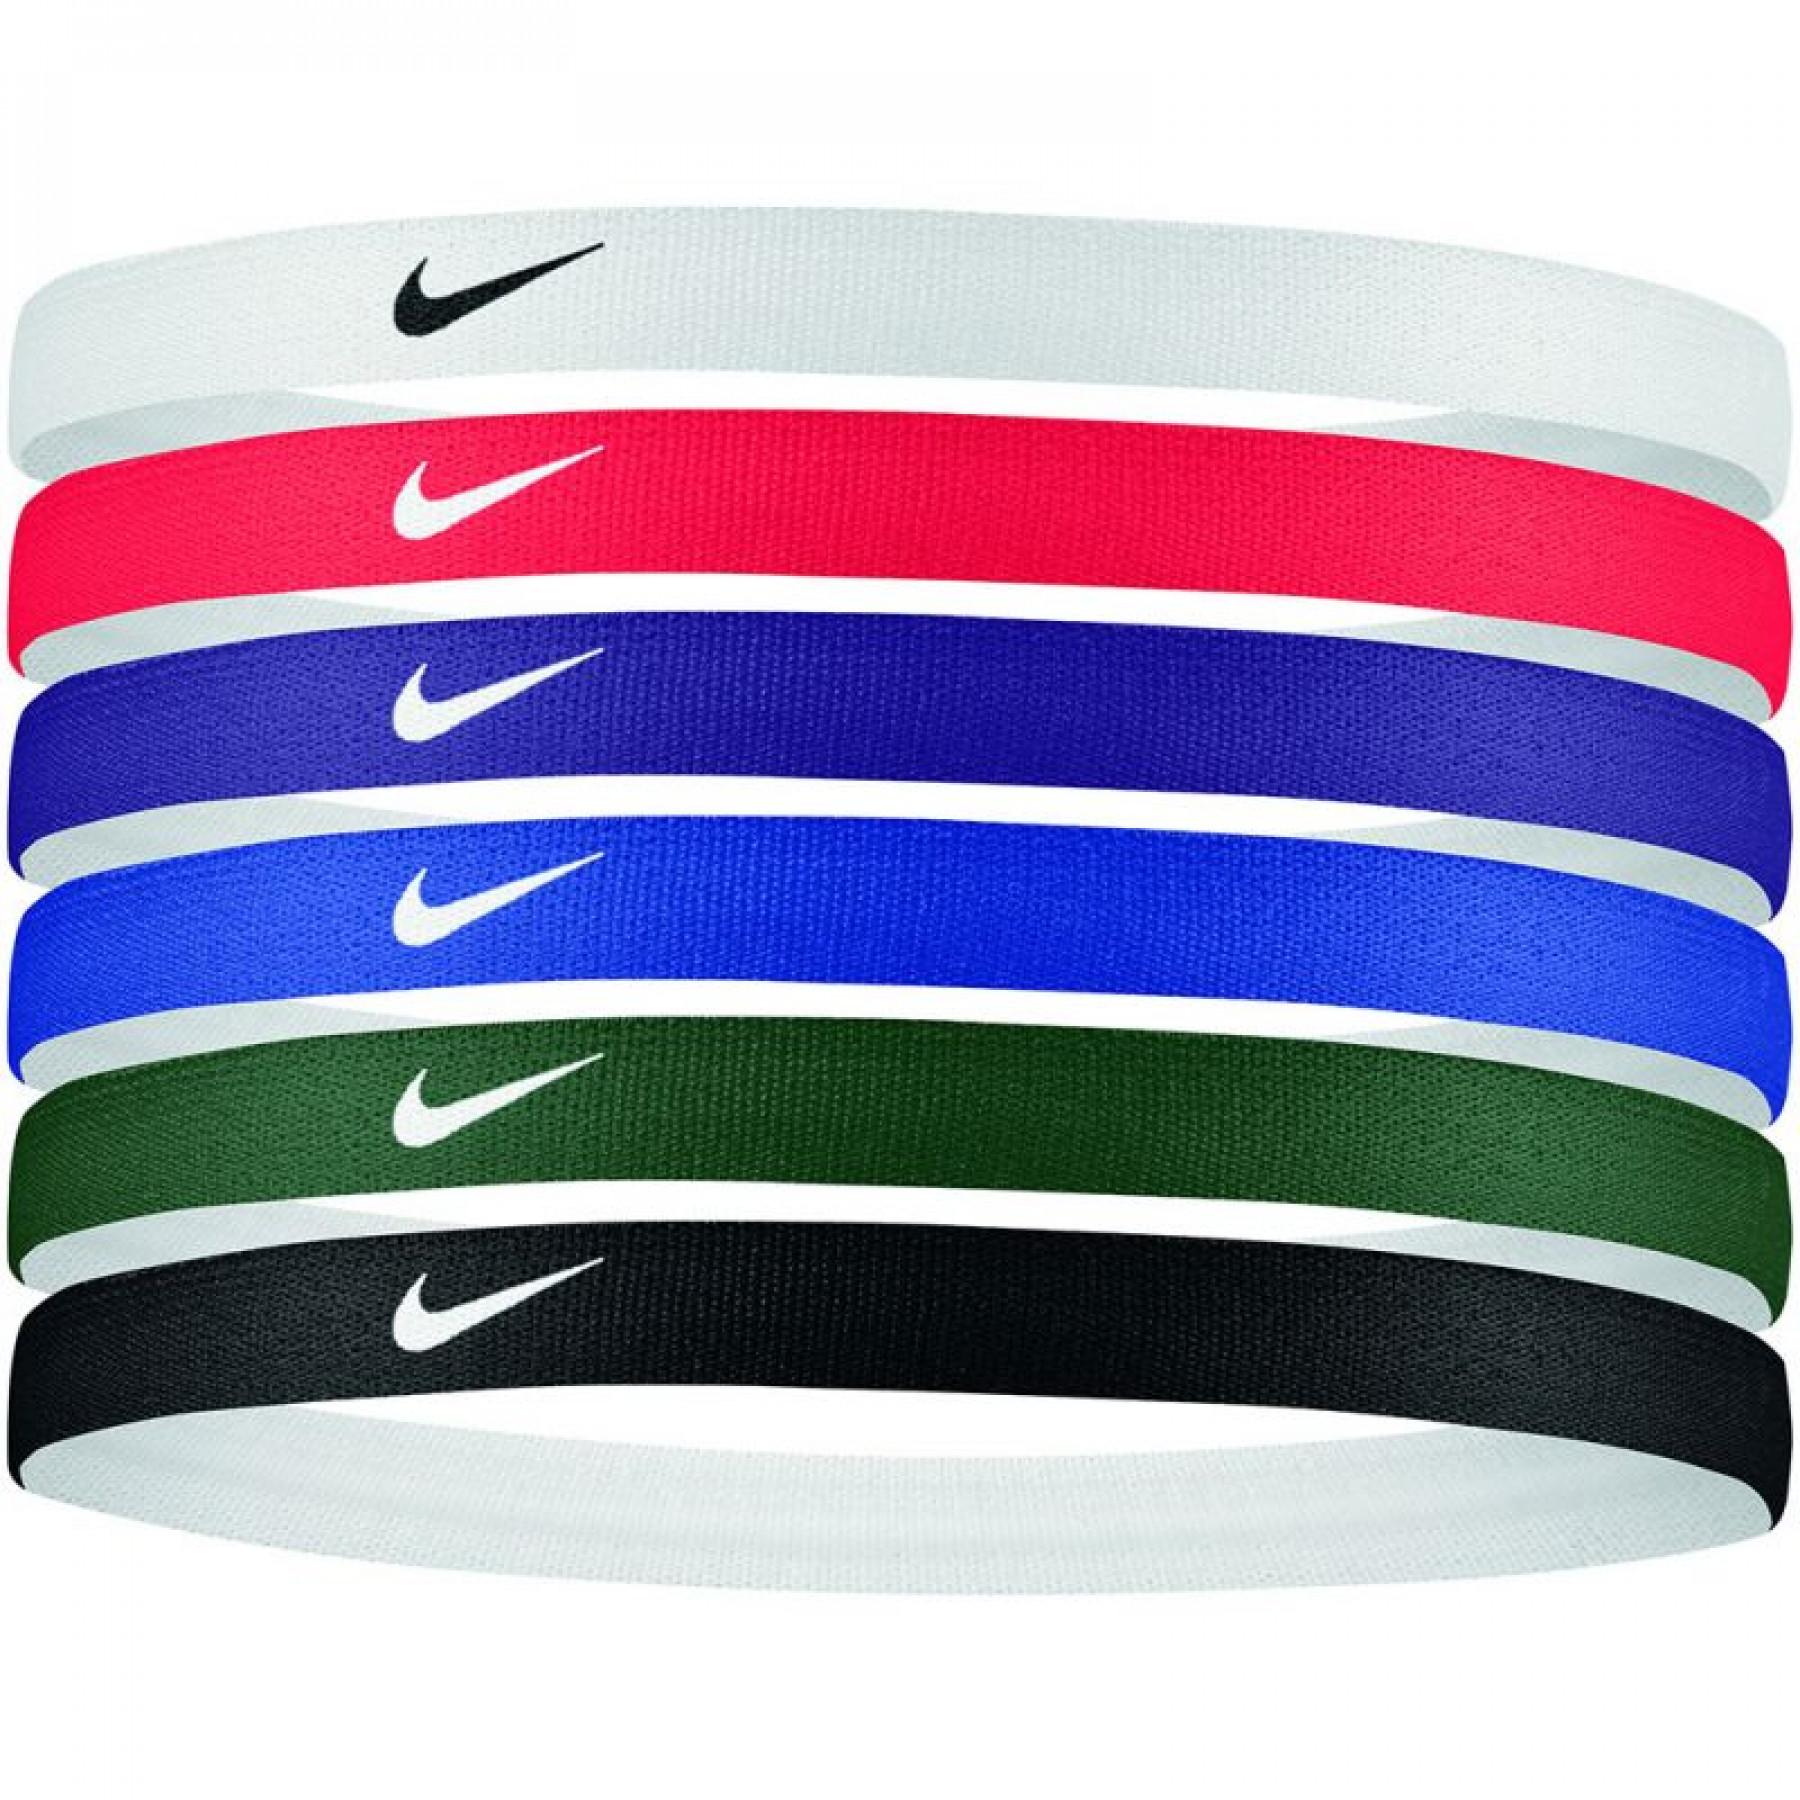 Bandeau serre-tête Nike Printed 6 unités - Accessoires - Equipements